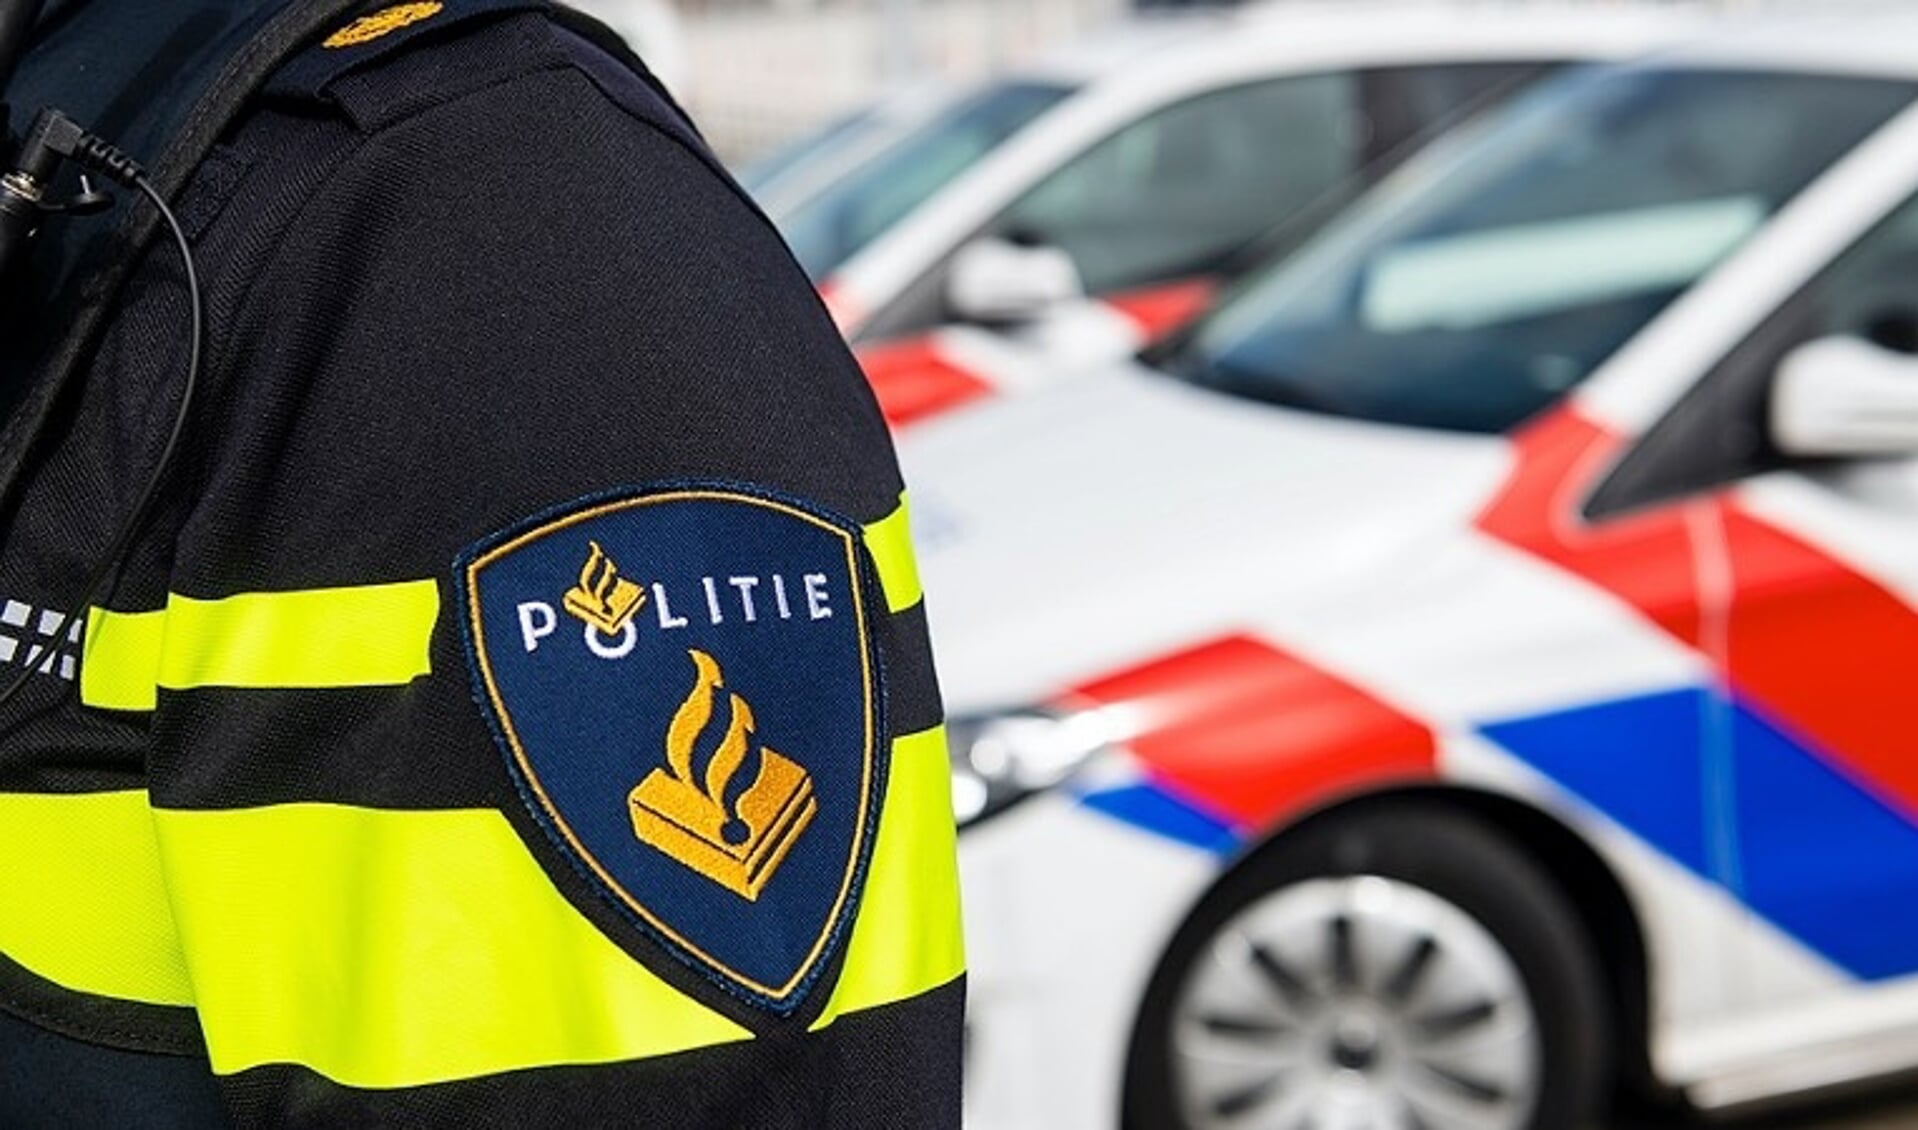 Wnd. burgemeester Bas Verkerk gaat in gesprek met de Veiligheidsregio over uitbreiding van het politieteam in Rijswijk.